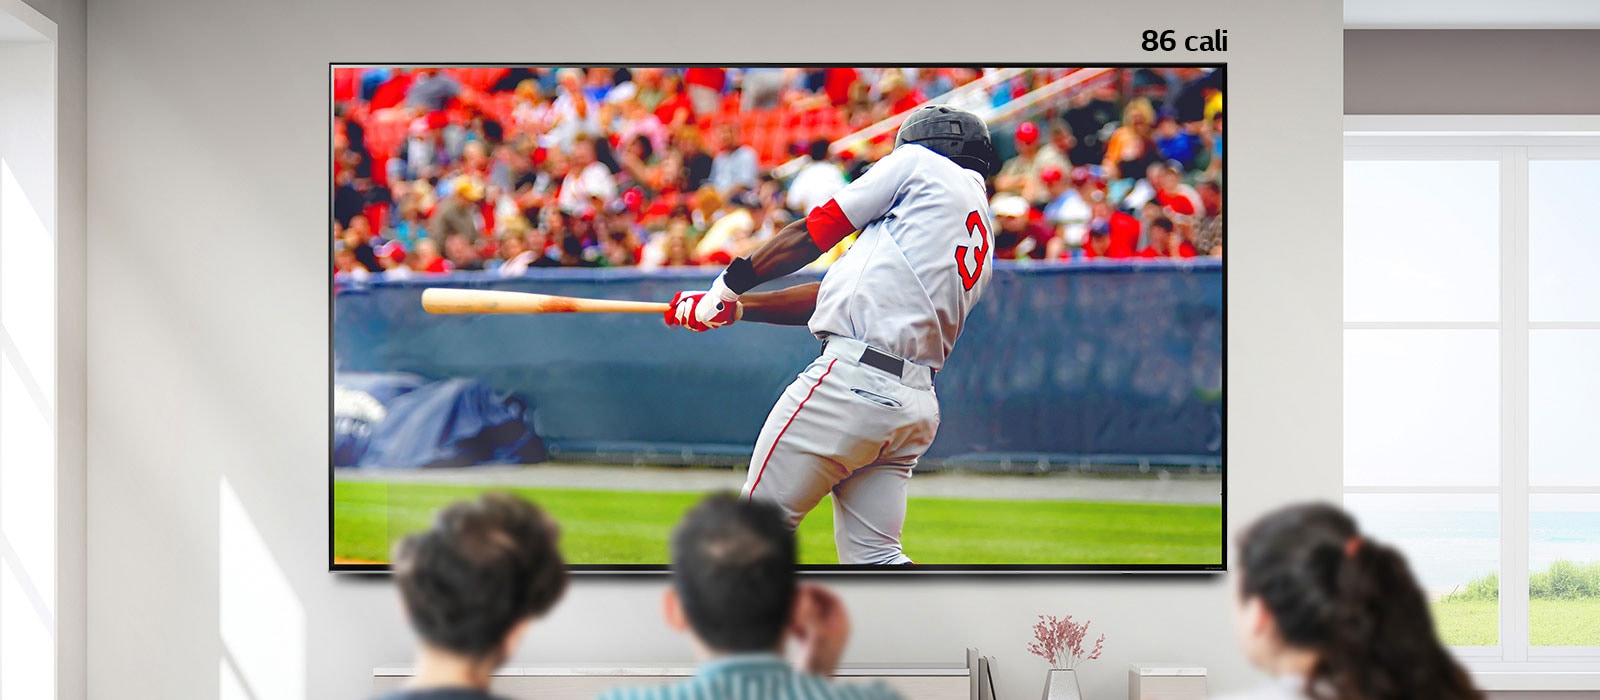 Przewijany obraz przedstawiający trzy osoby oglądające bejsbol na dużym telewizorze zawieszonym na ścianie. Przewijanie w prawo powoduje powiększanie się ekranu.